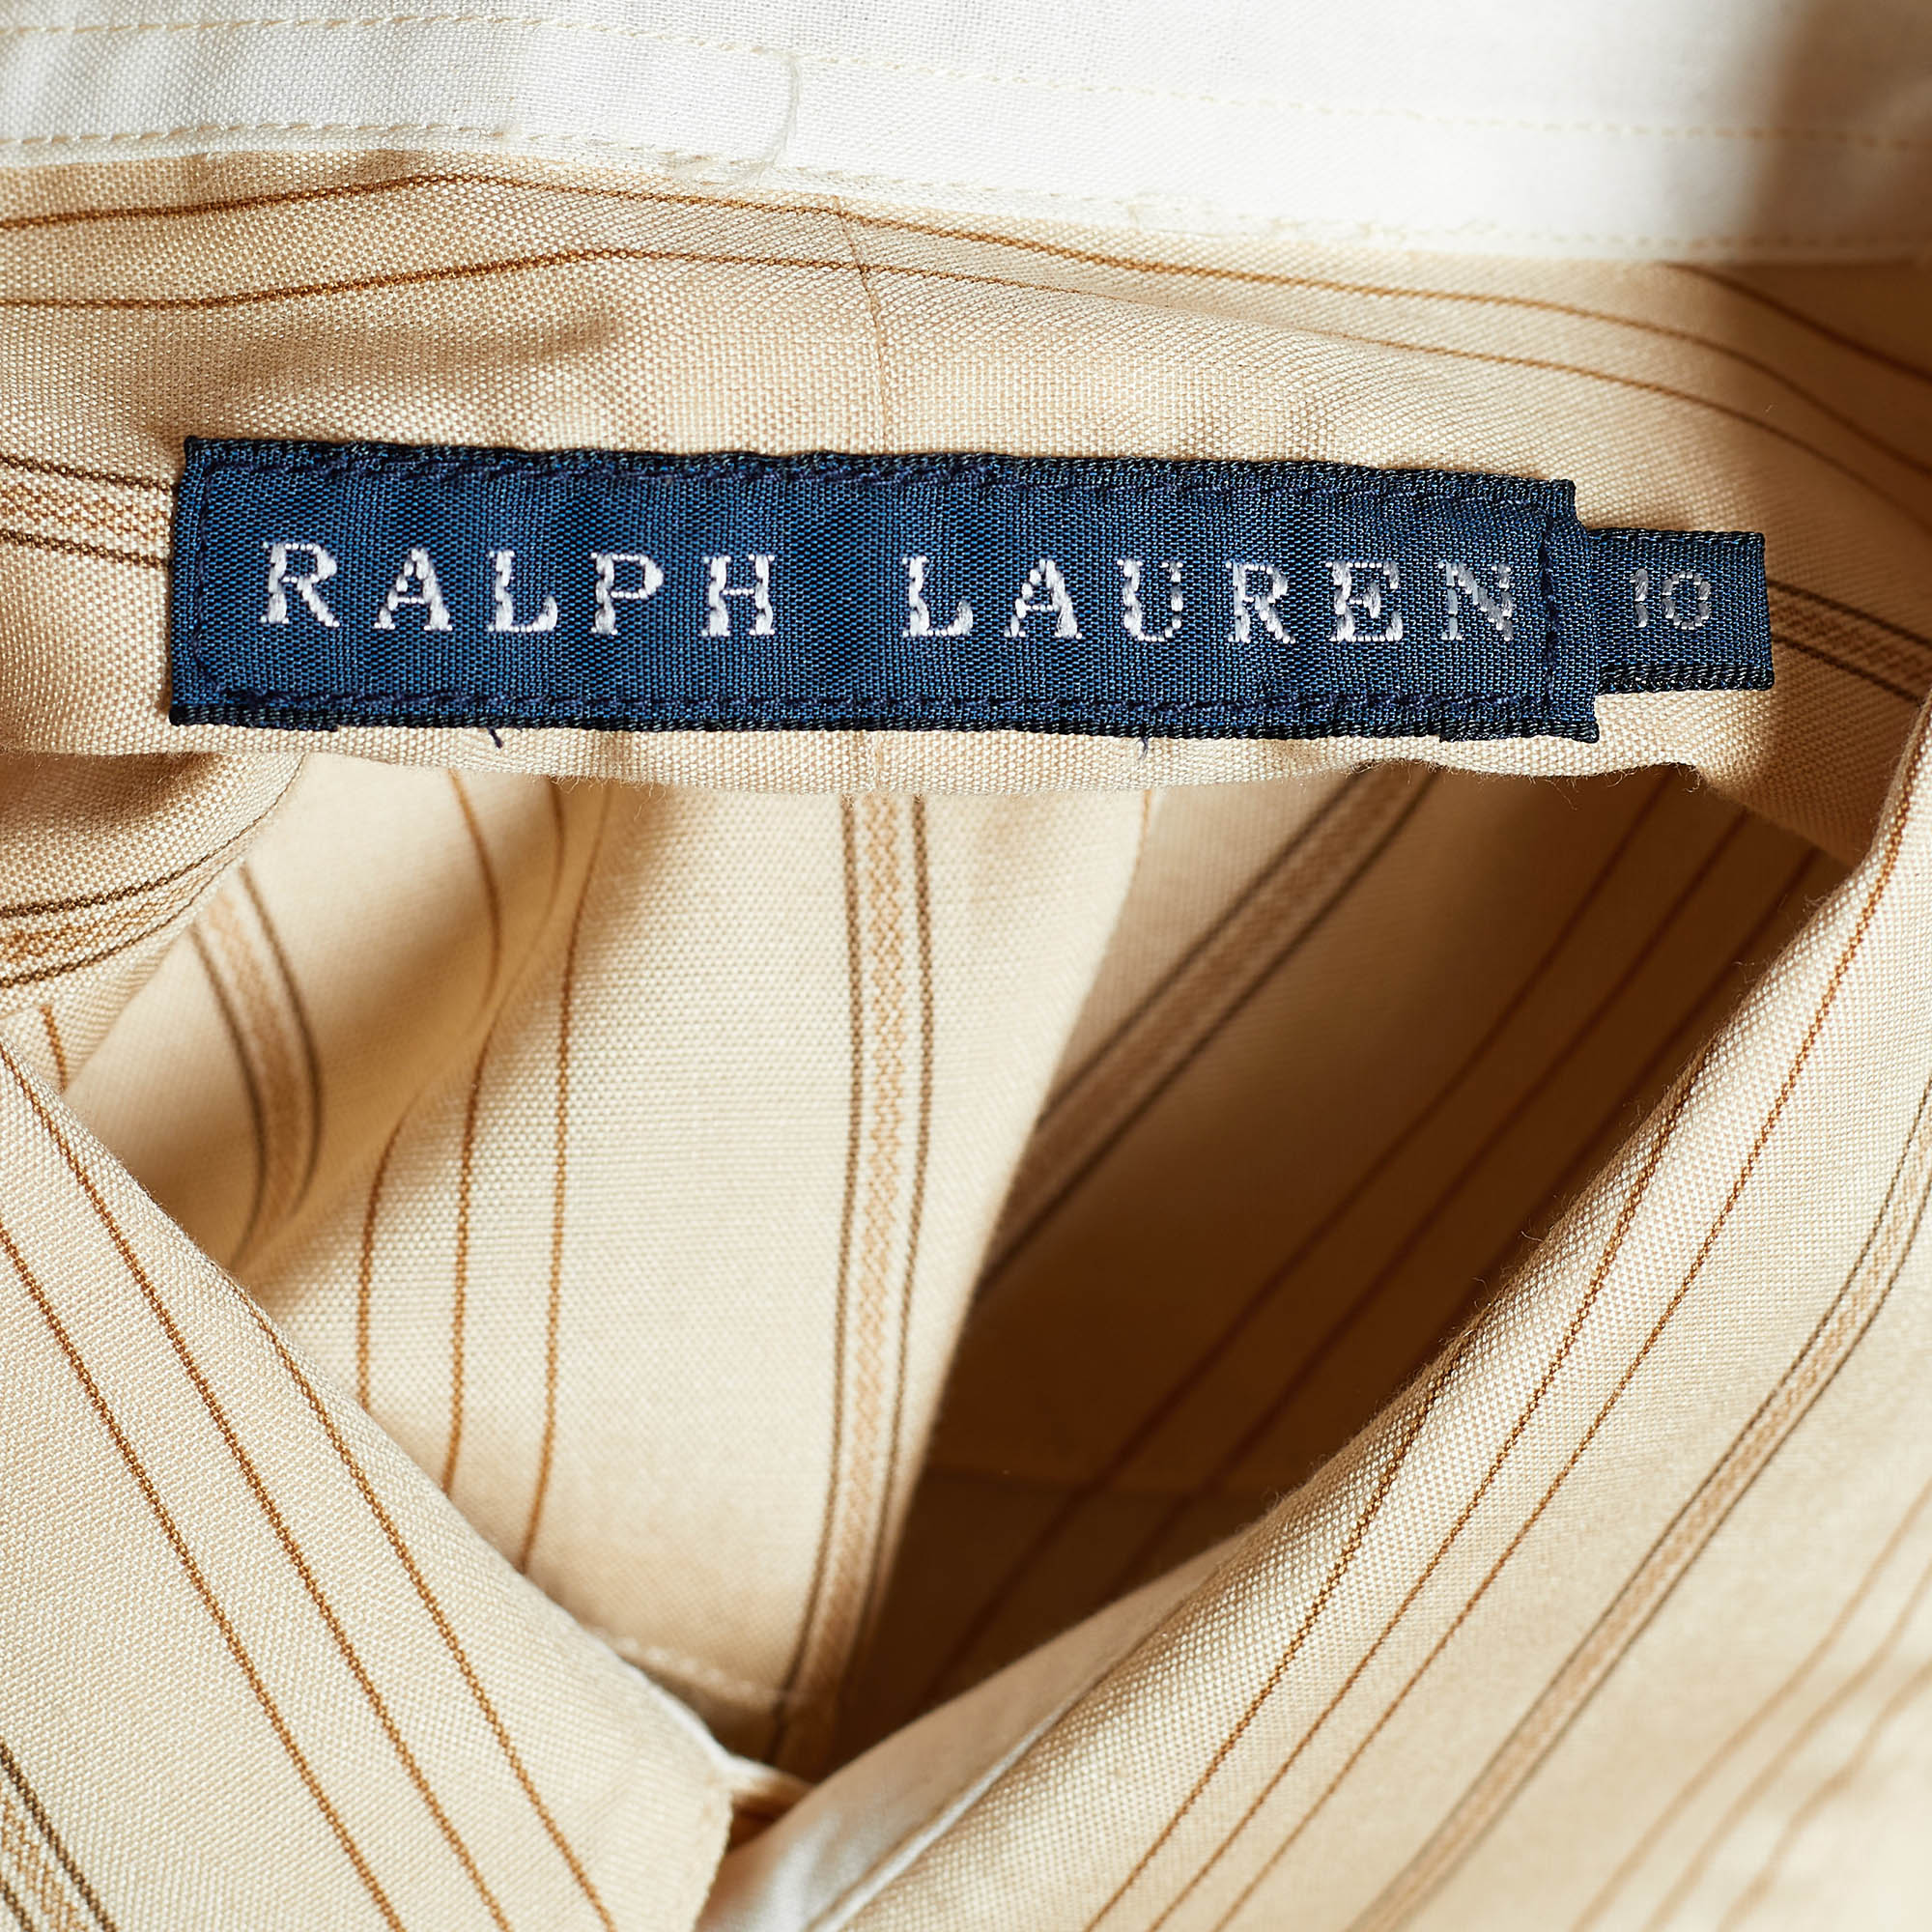 Ralph Lauren Beige Silk & Cotton Striped Dress Shirt L